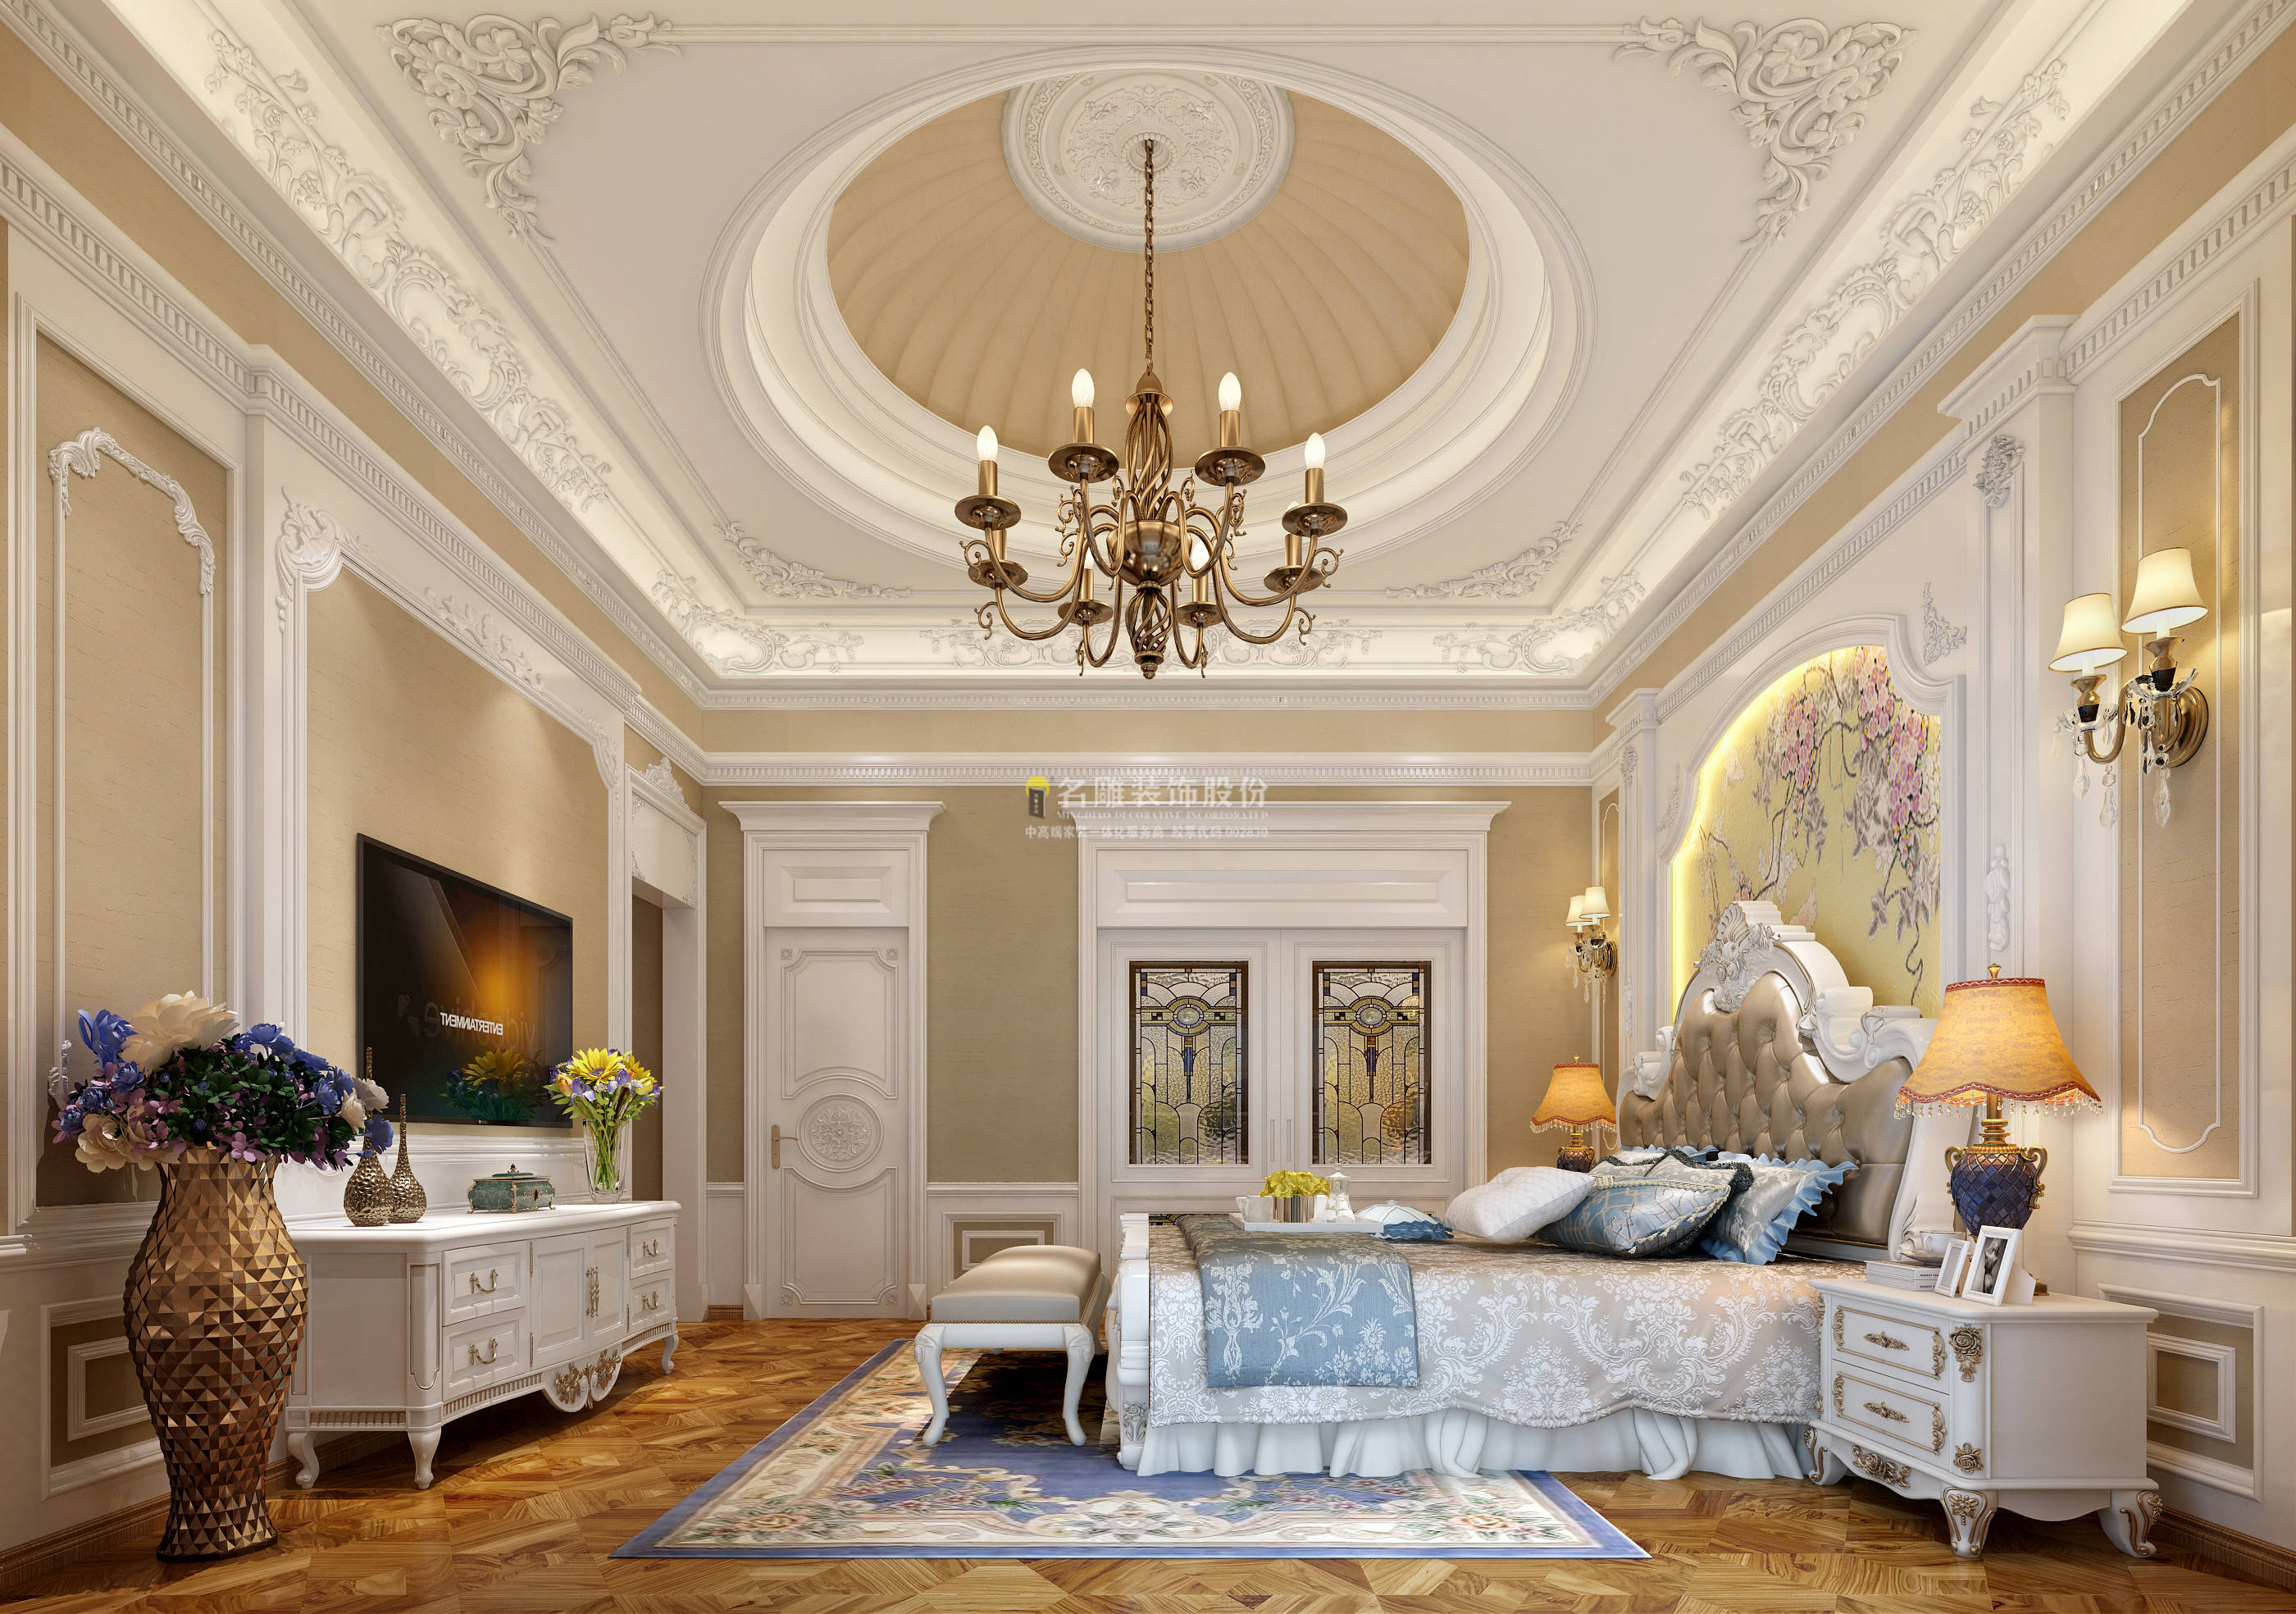 名雕装饰丨500平法式豪华别墅装修,打造浪漫唯美居家空间!